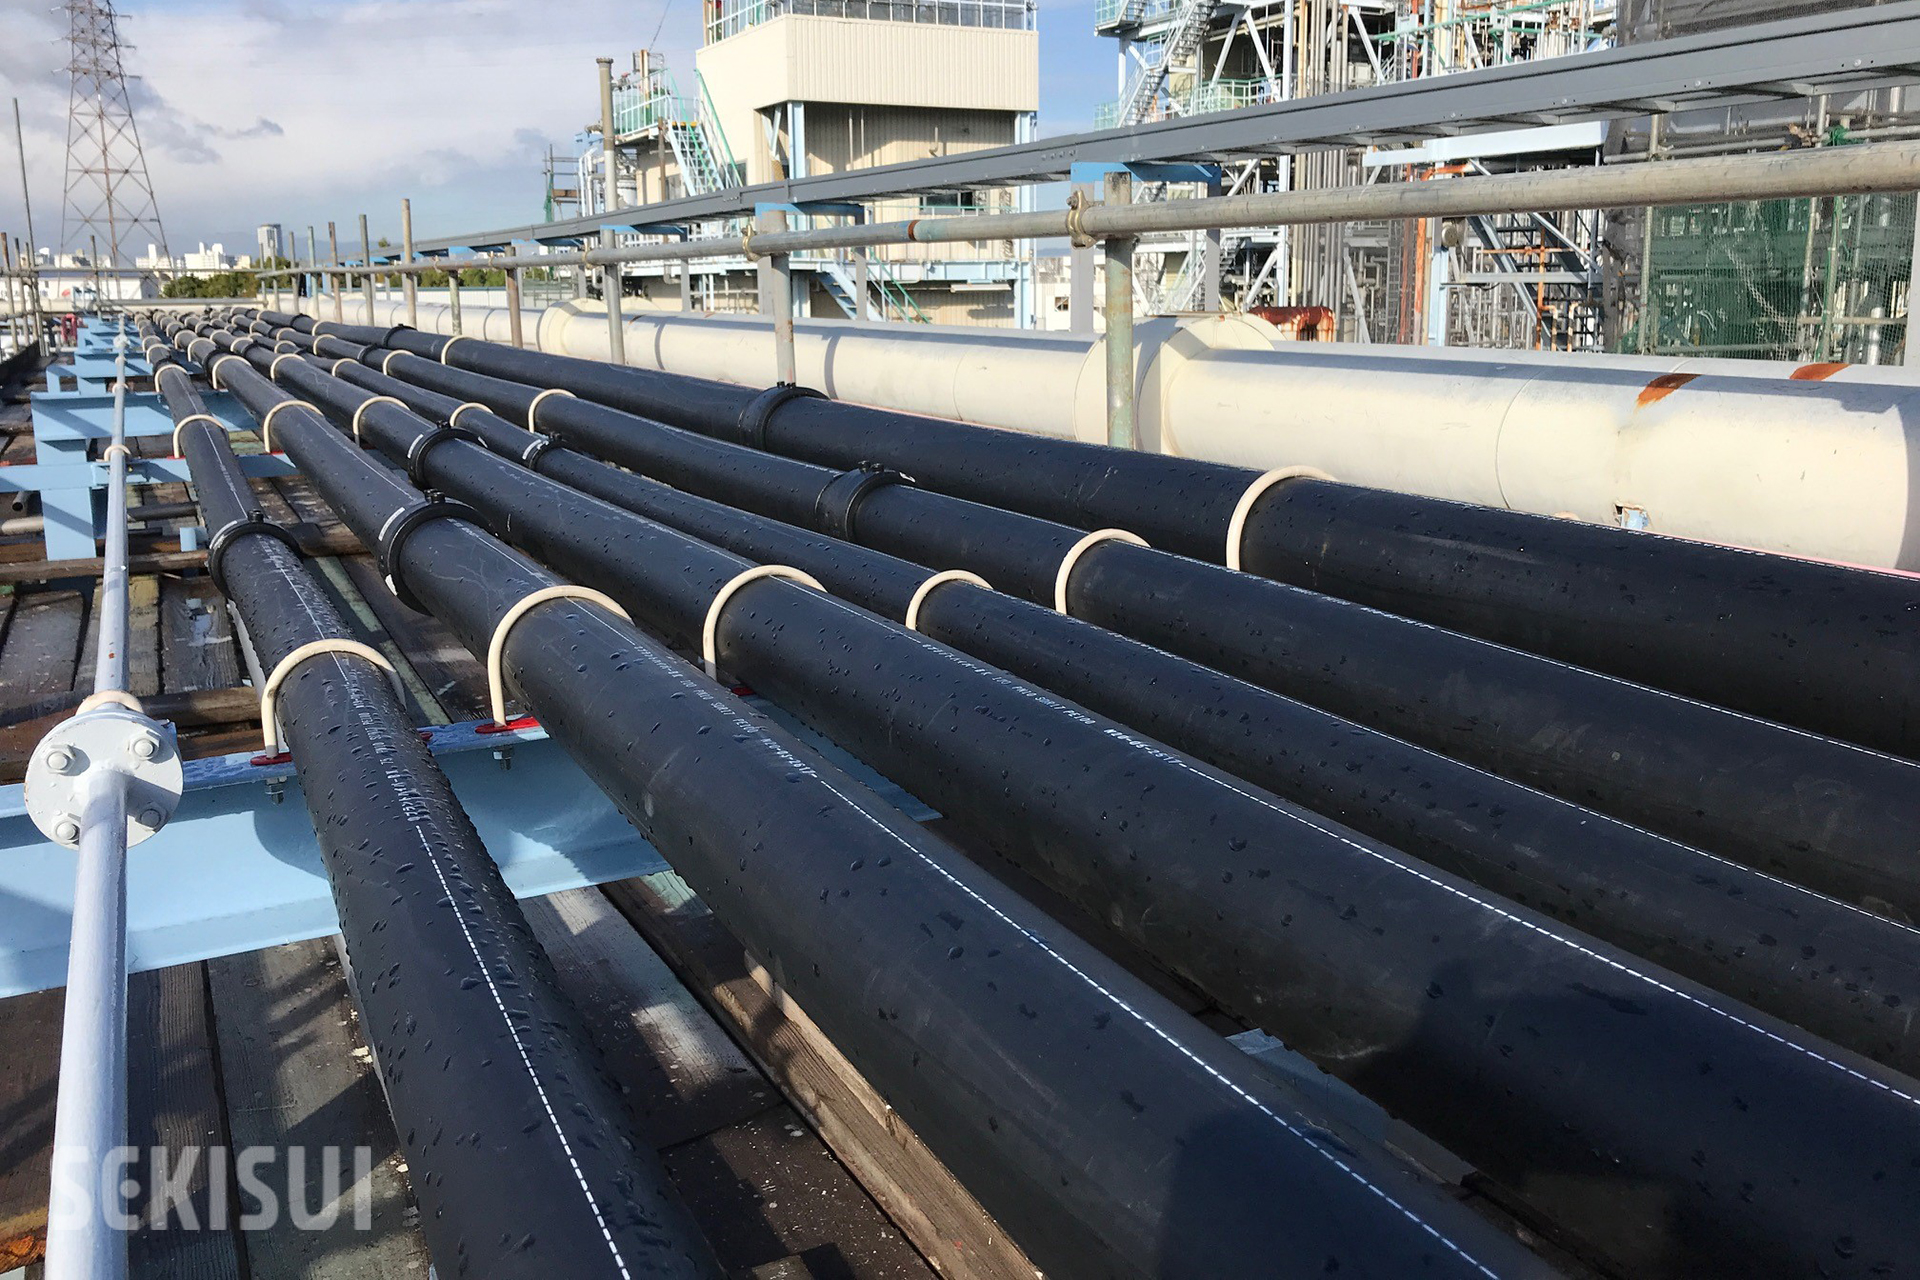 ダイキン工業 淀川製作所の工程廃水配管にプラントハイパーBKが採用されました